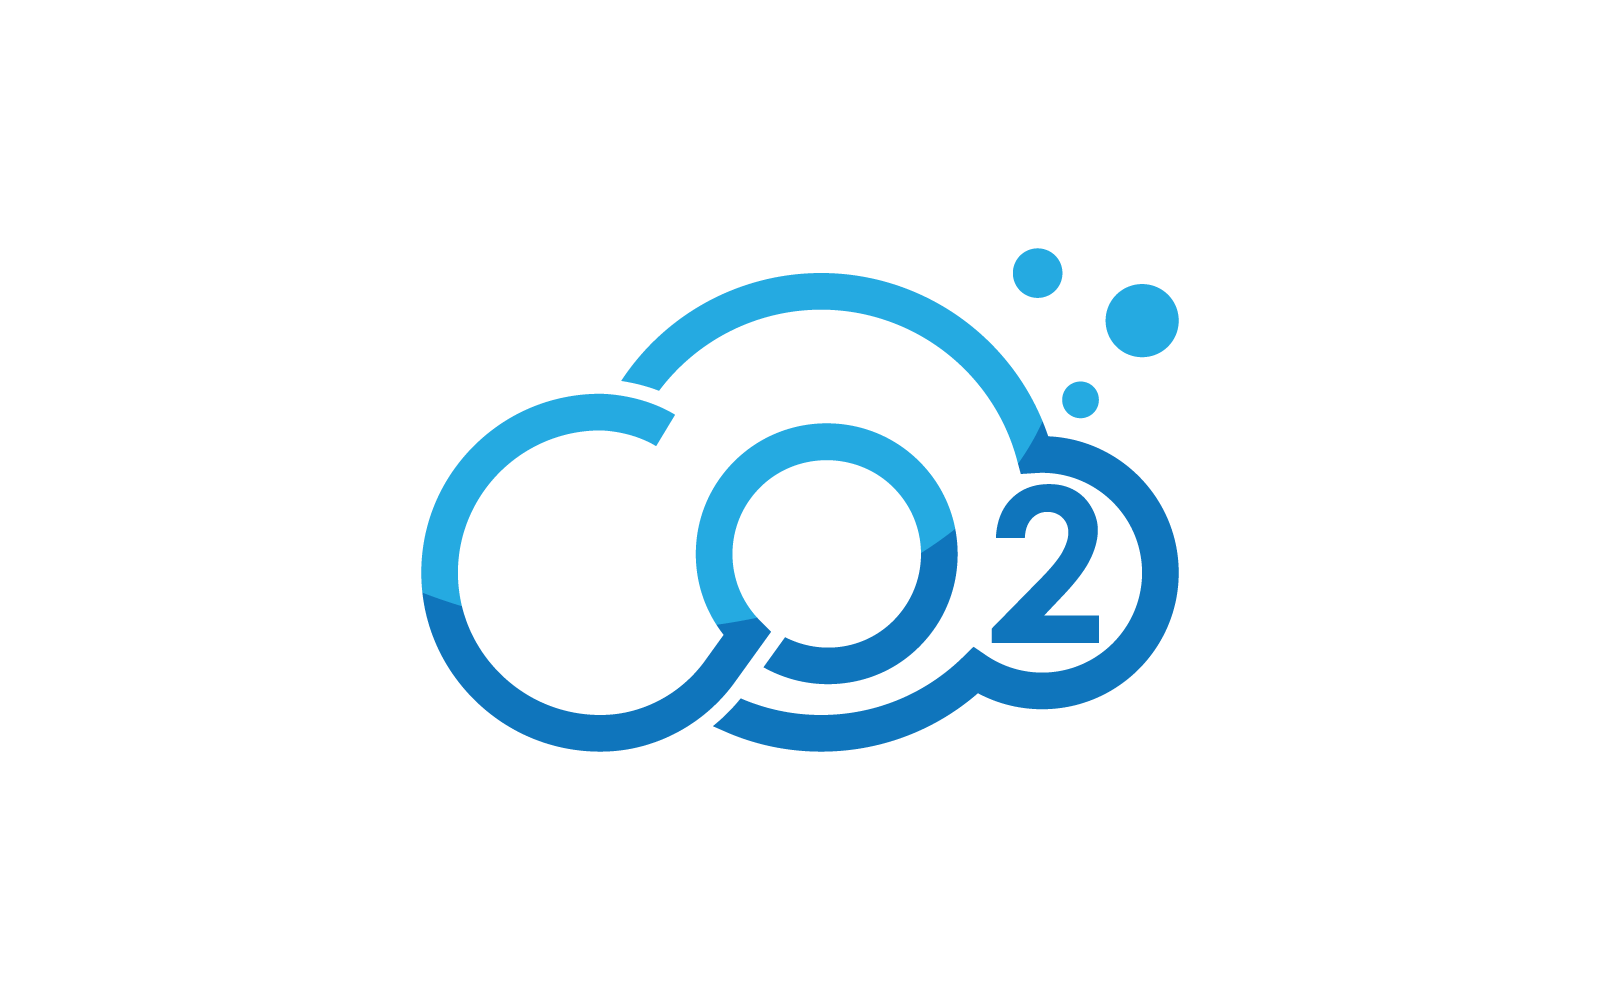 Co2 Carbon dioxide logo flat design